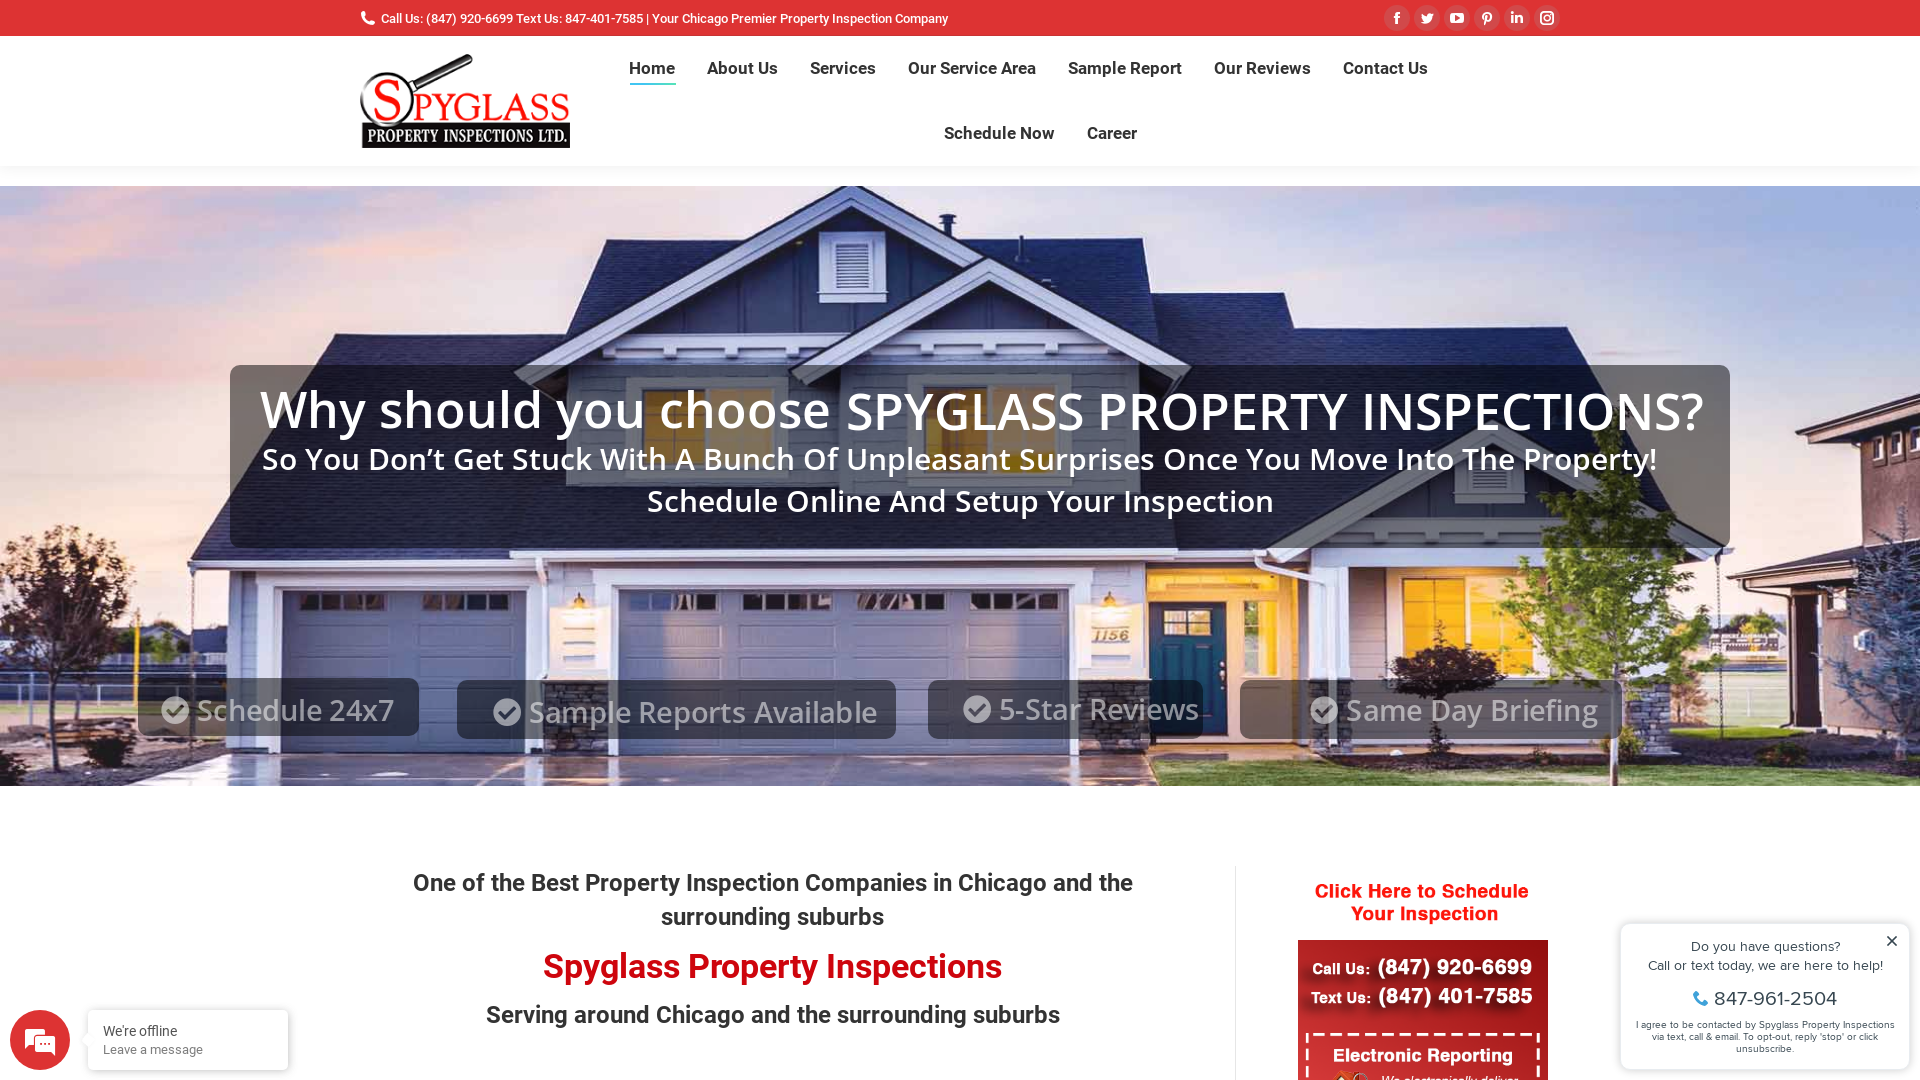 Spyglass Property Inspections